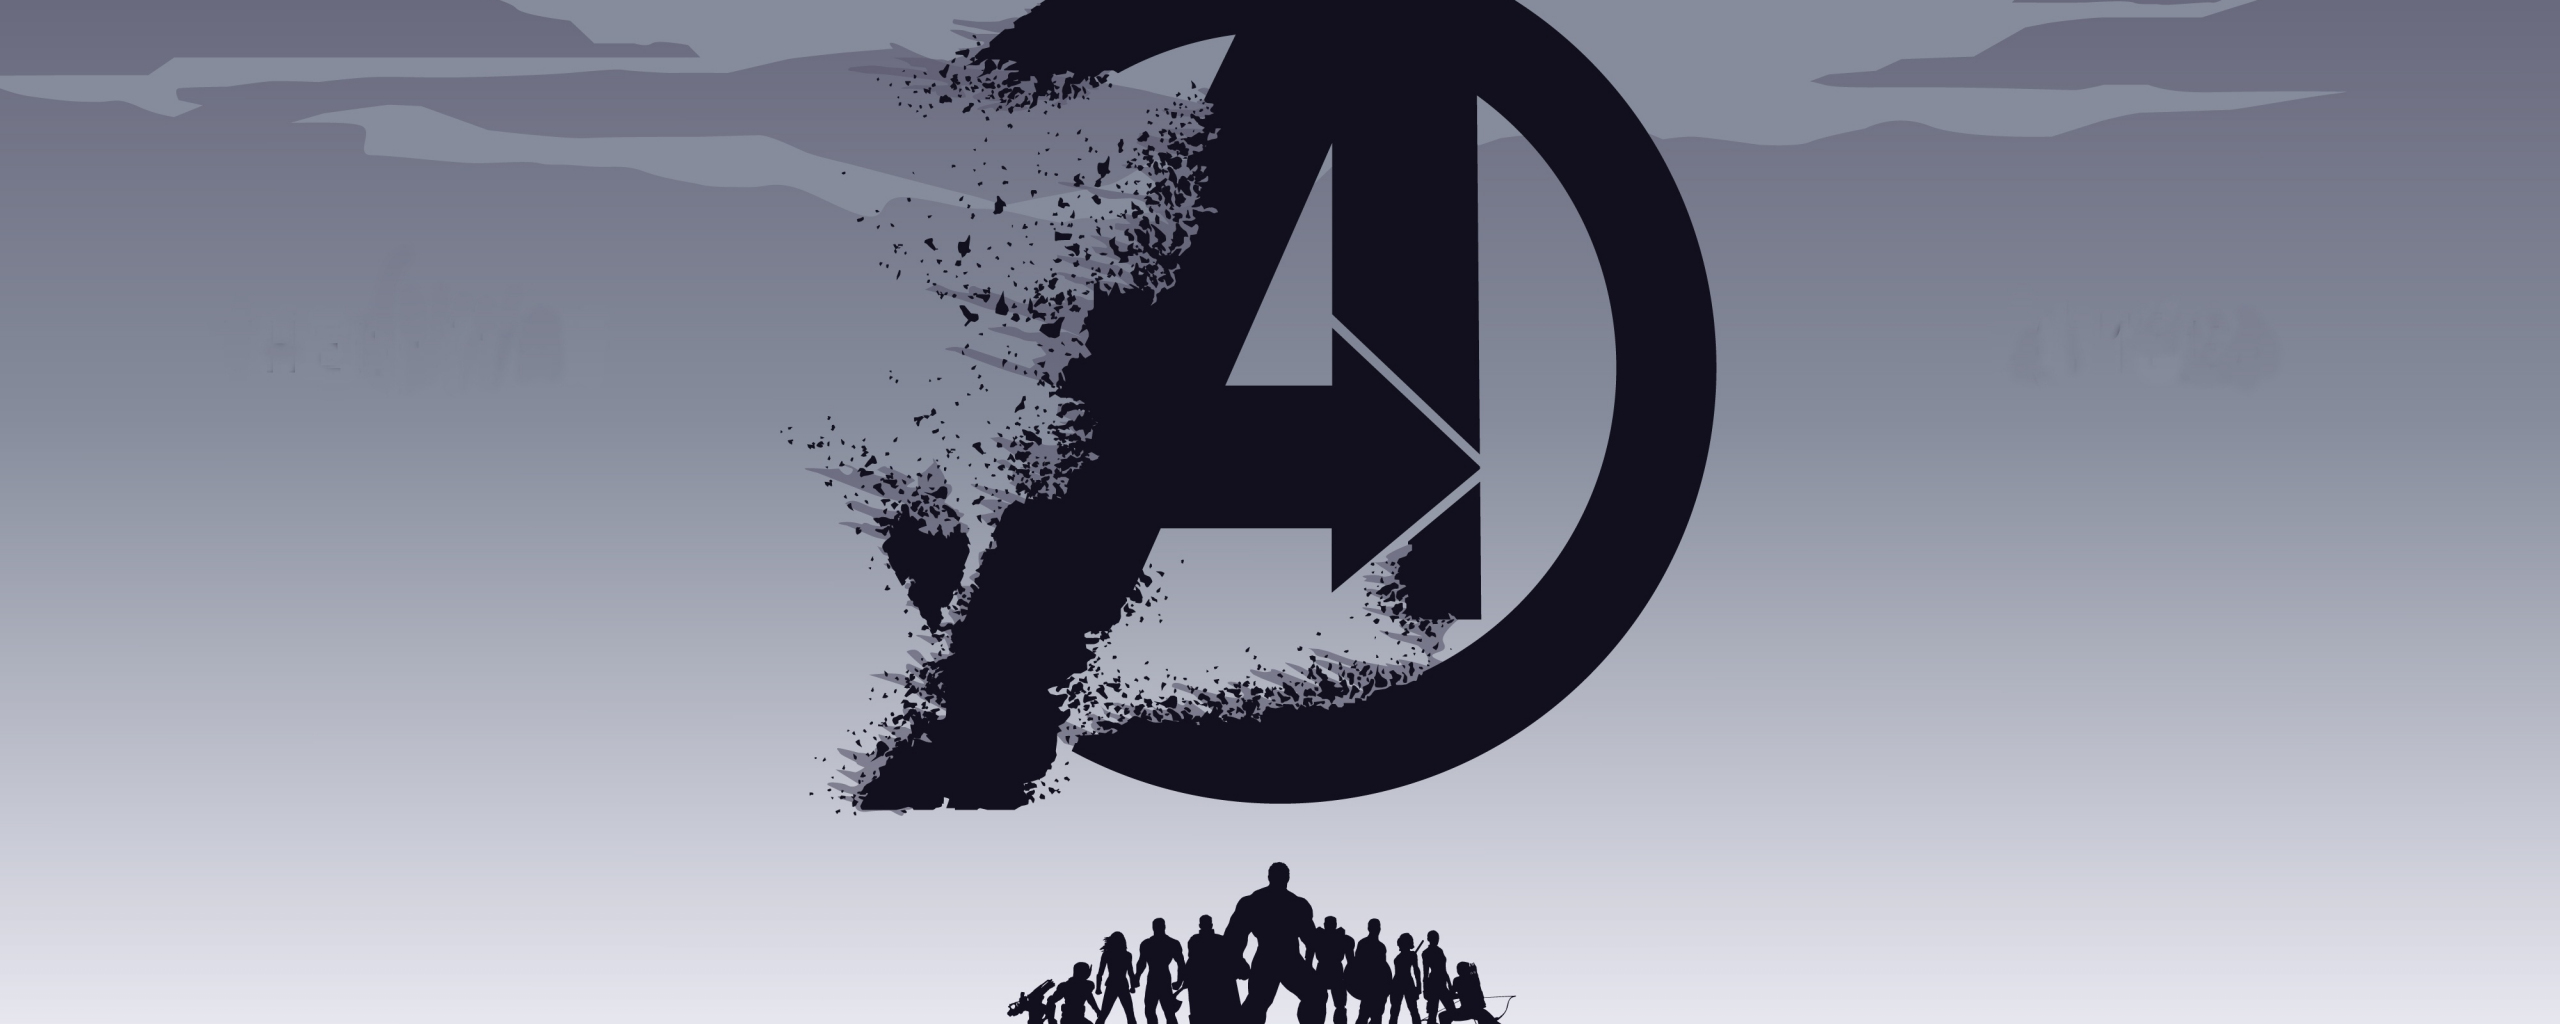 2019 movie, Avengers: Endgame, minimal, silhouette, art, 2560x1024 wallpaper